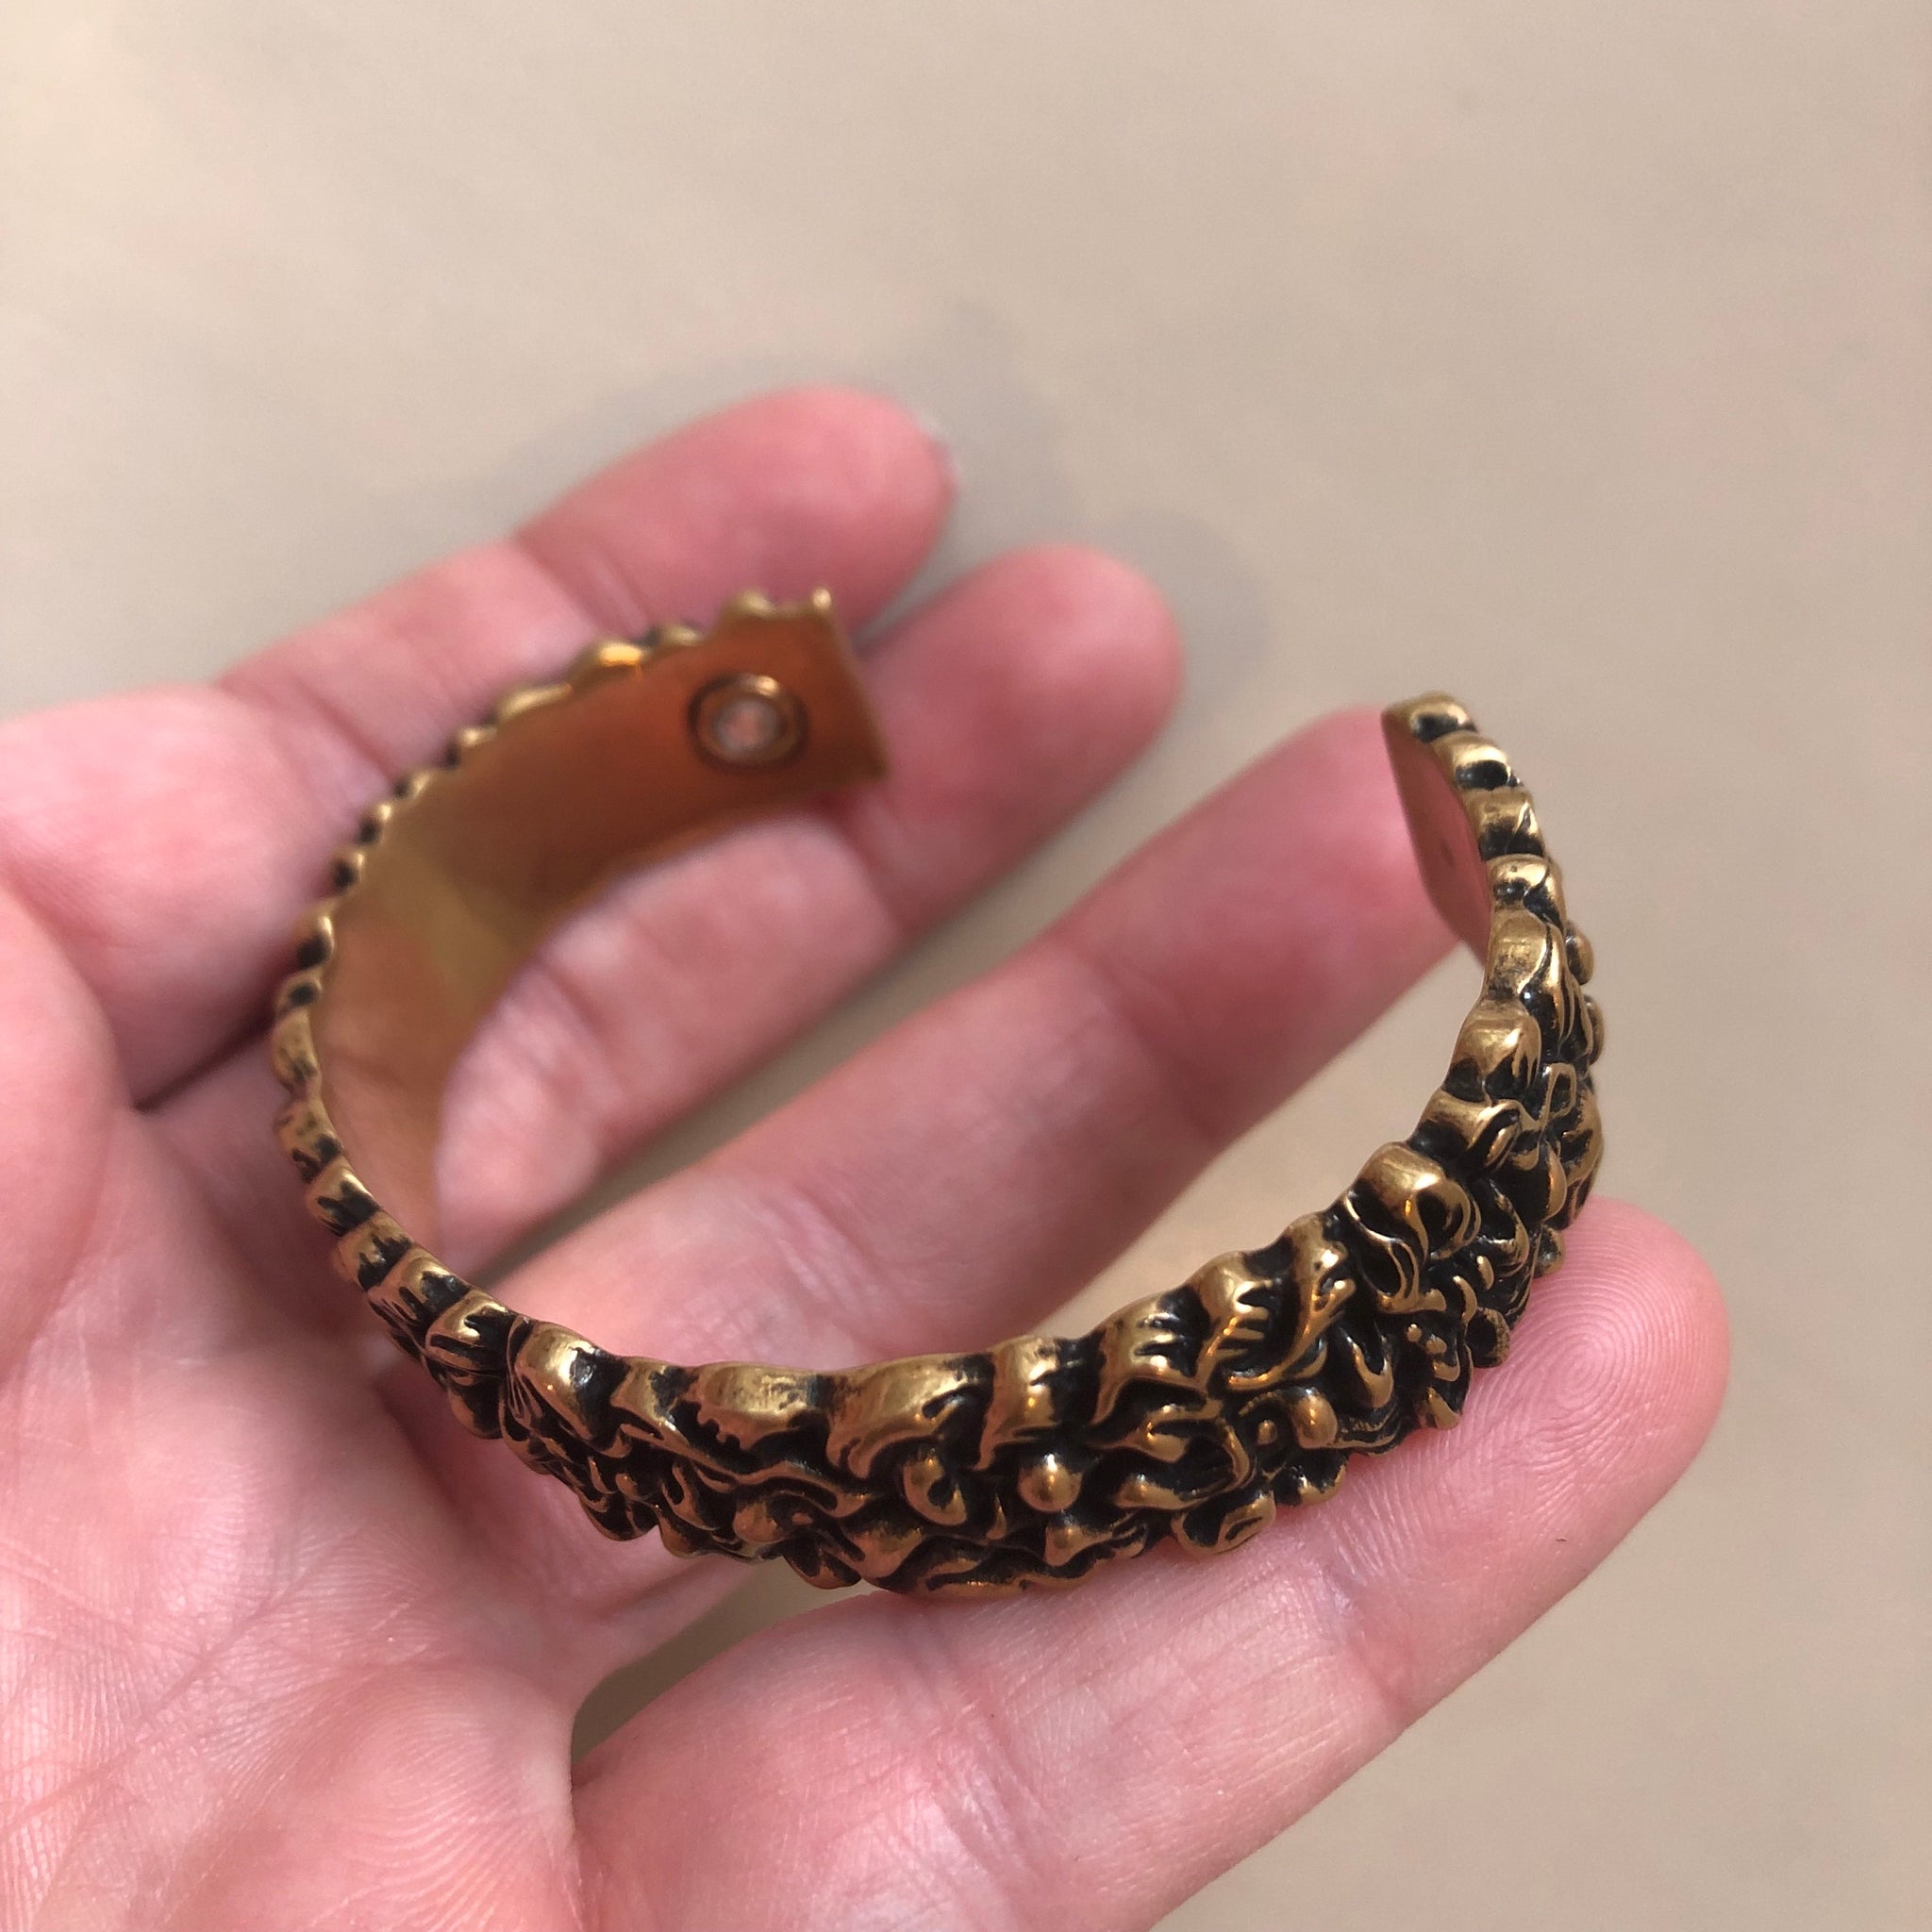 Gucci Lionhead Mane Cuff Bracelet in Antique Gold Small